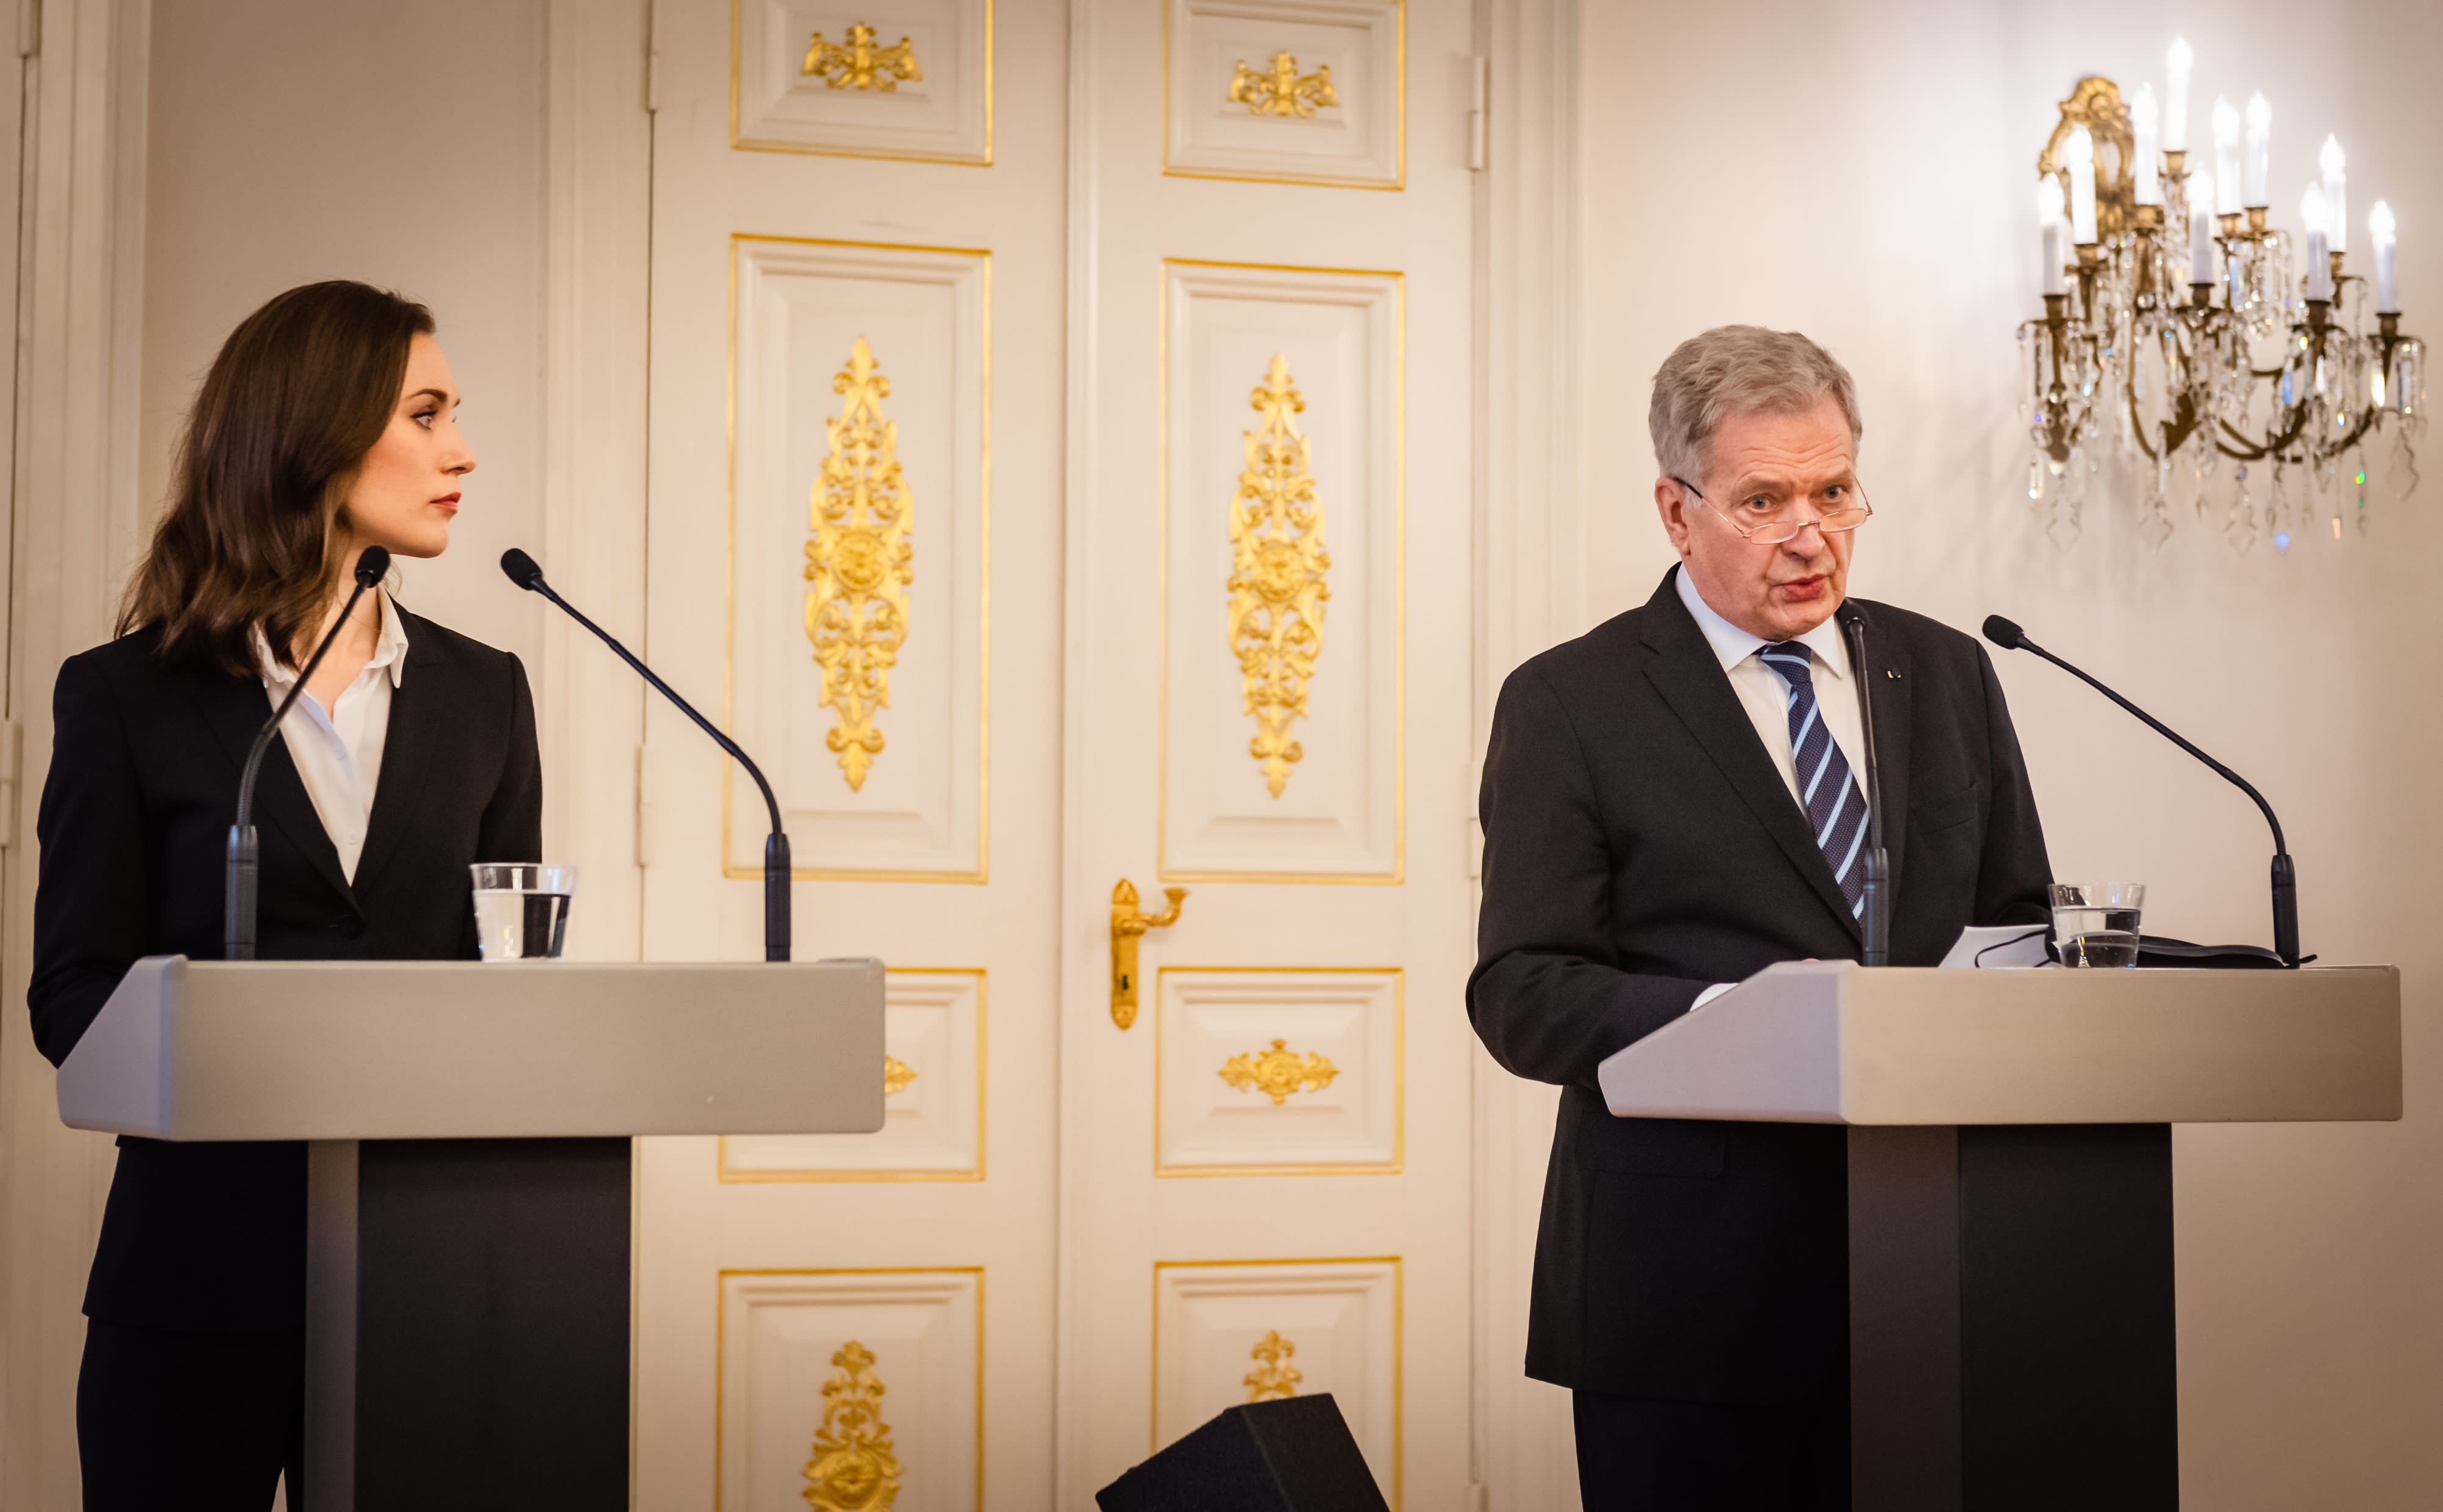 Sauli Niinistö 대통령과 Sanna Marin 총리는 뮌헨 안보 회의로 향했습니다.